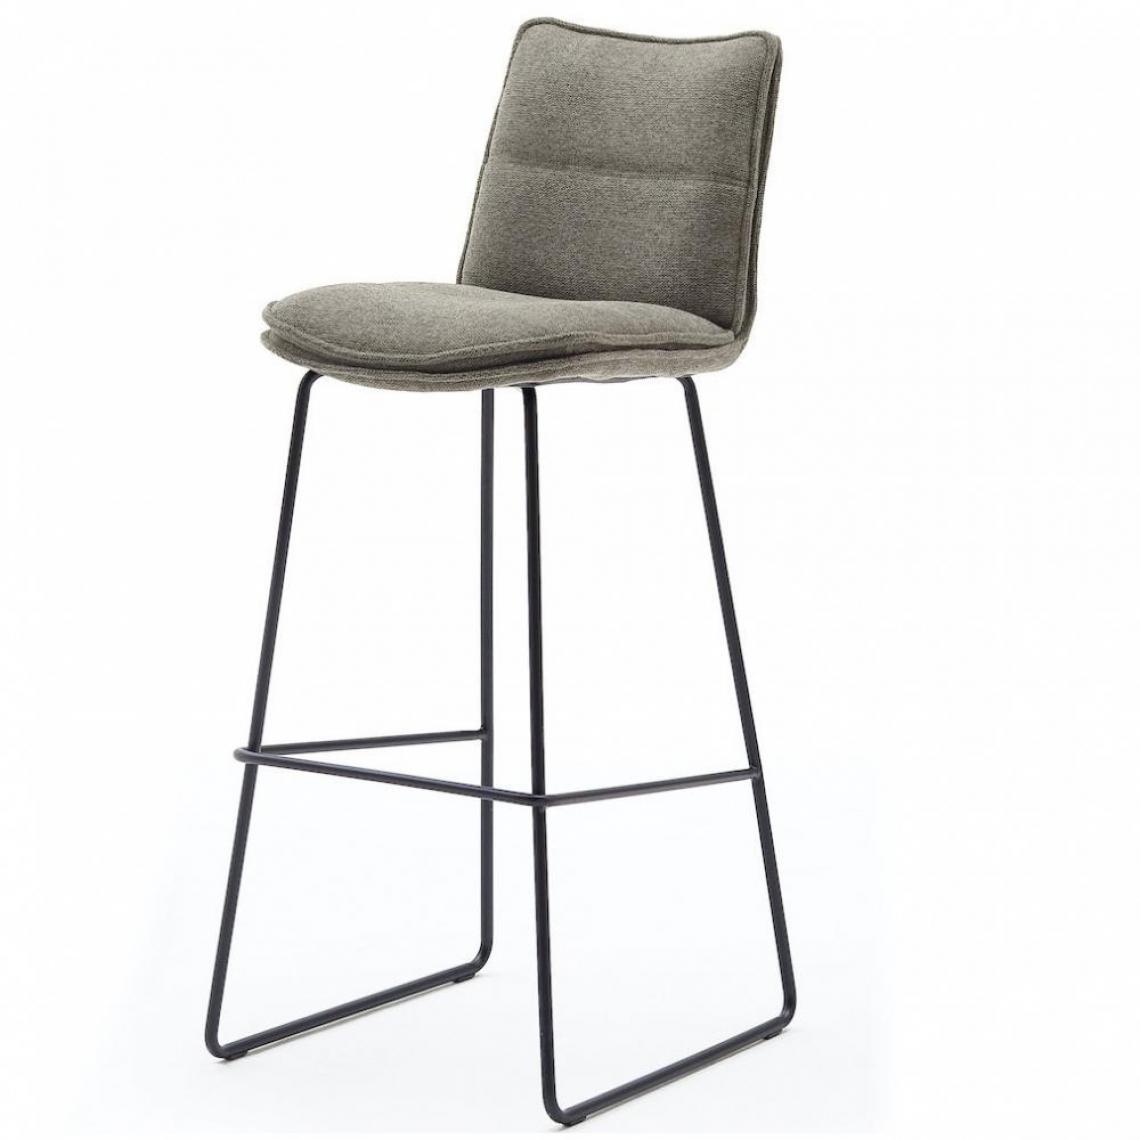 Inside 75 - Lot de 2 chaises de bar design HALSOU tissu cappuccino et pieds métal laqué noir - Chaises